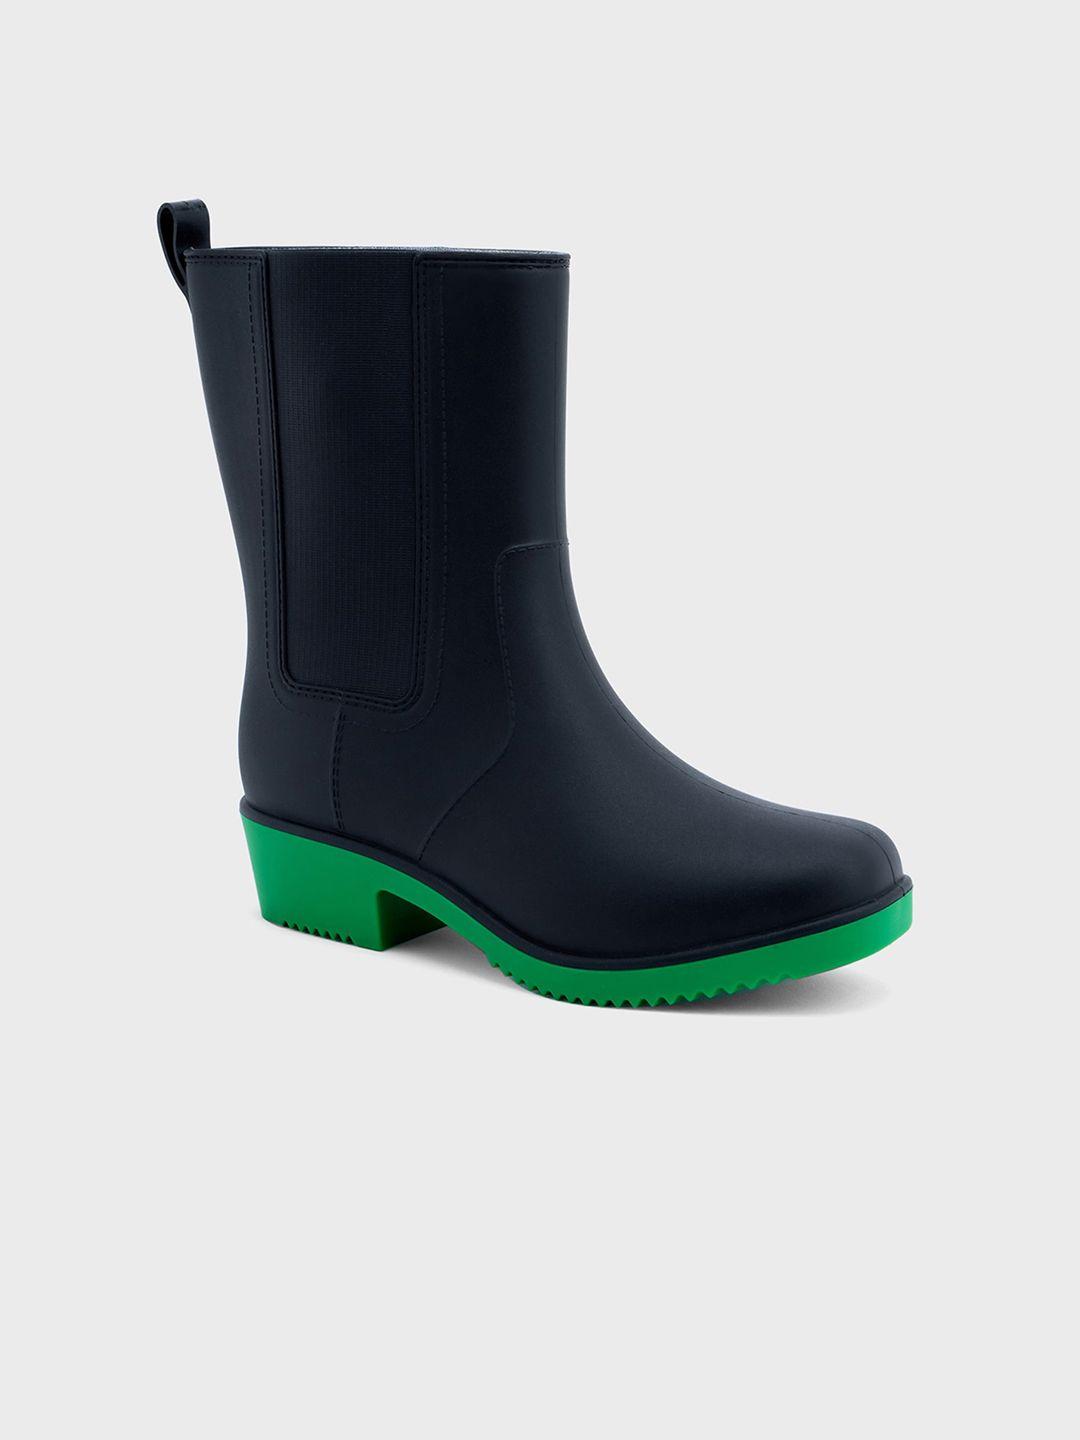 20dresses women mid -top block heel rain boots